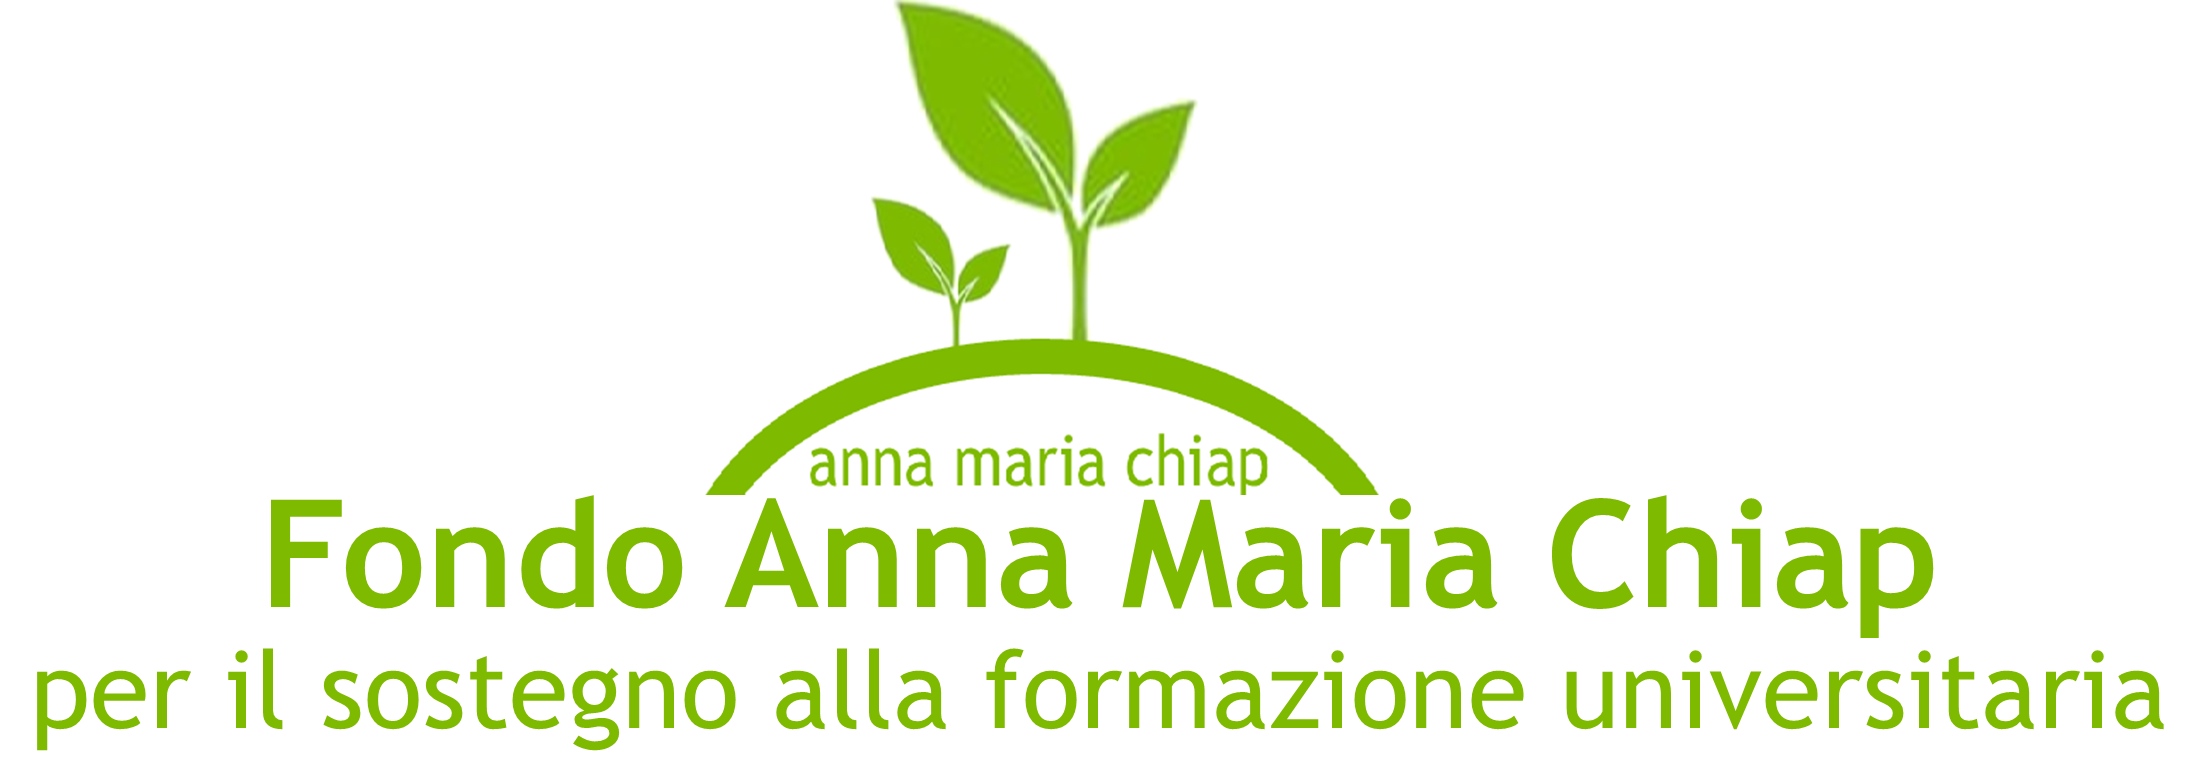 Fondo Anna Maria Chiap per il sostegno alla formazione universitaria